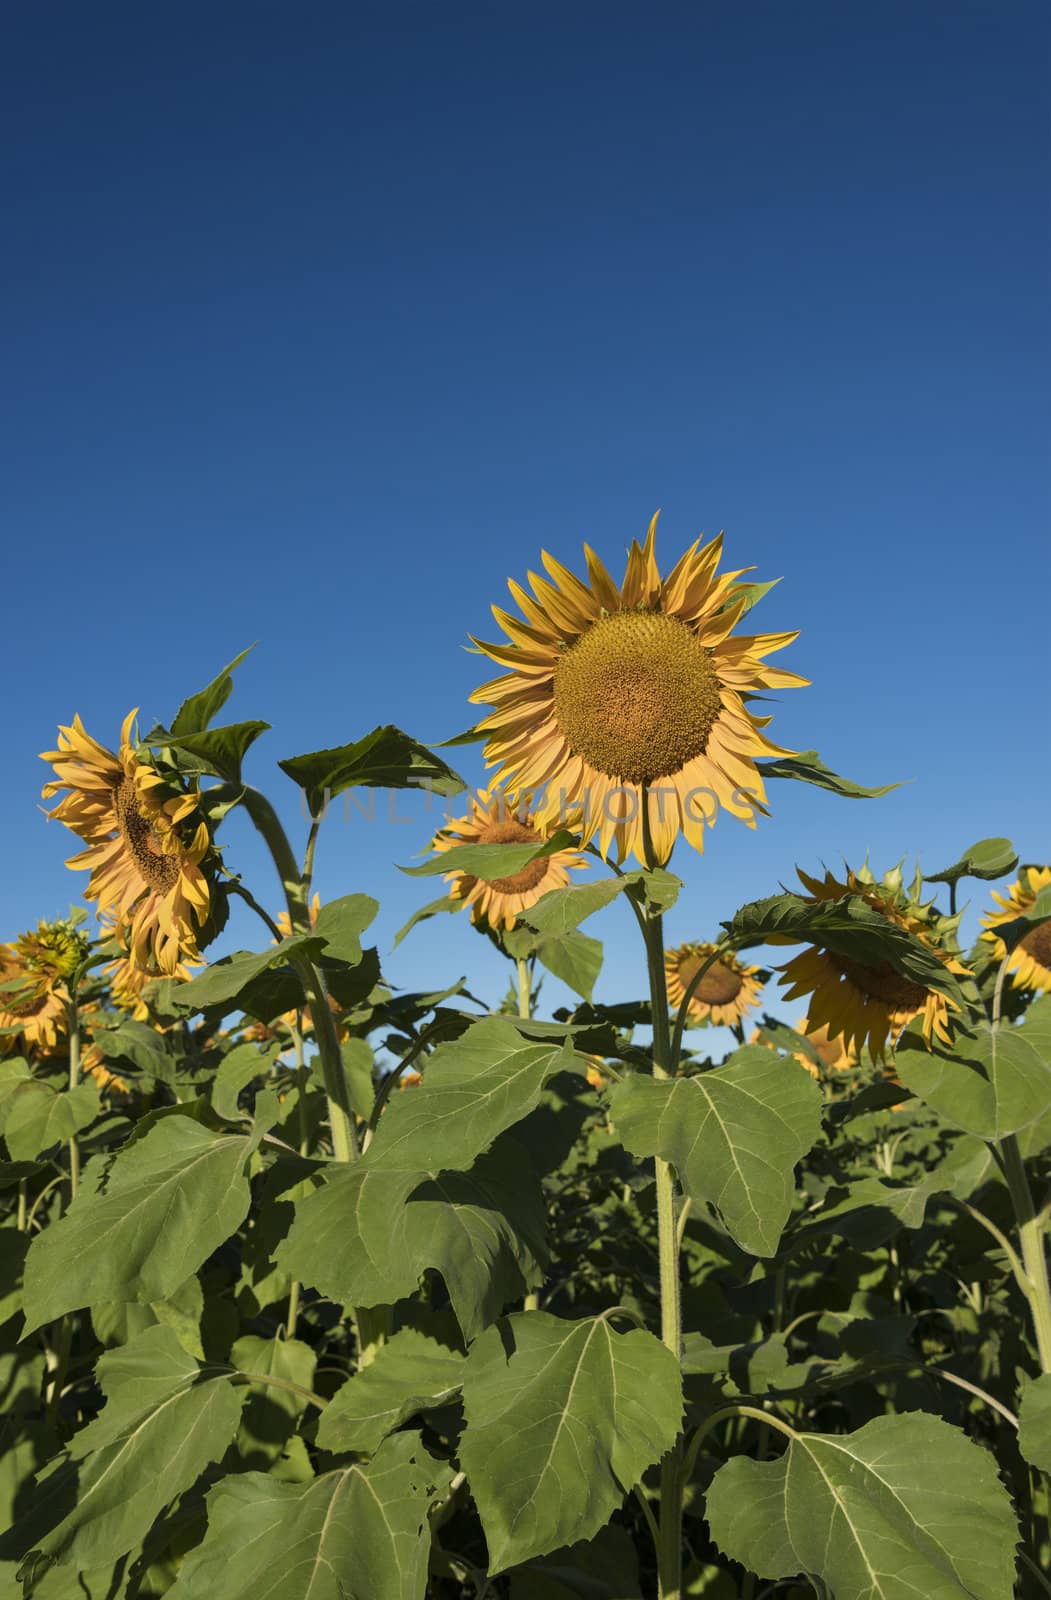 Sunflower in August by Gordo25